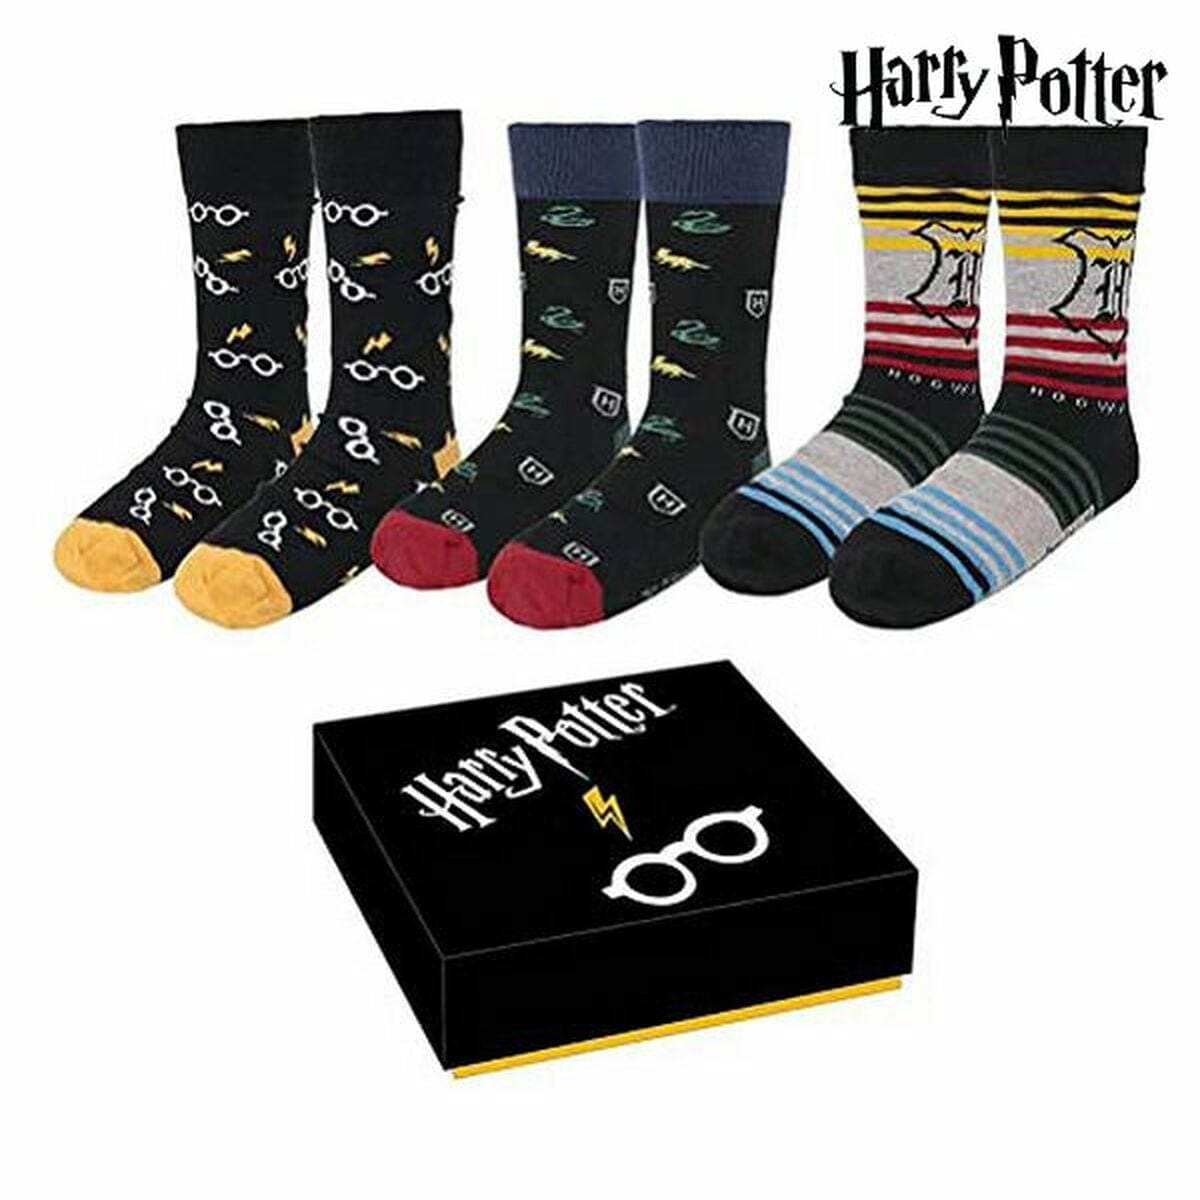 Harry Potter Mode | Accessoires > Kleidung und Schuhe > Unterwäsche Socken Harry Potter 3 Paar (Einheitsgröße (35-41))